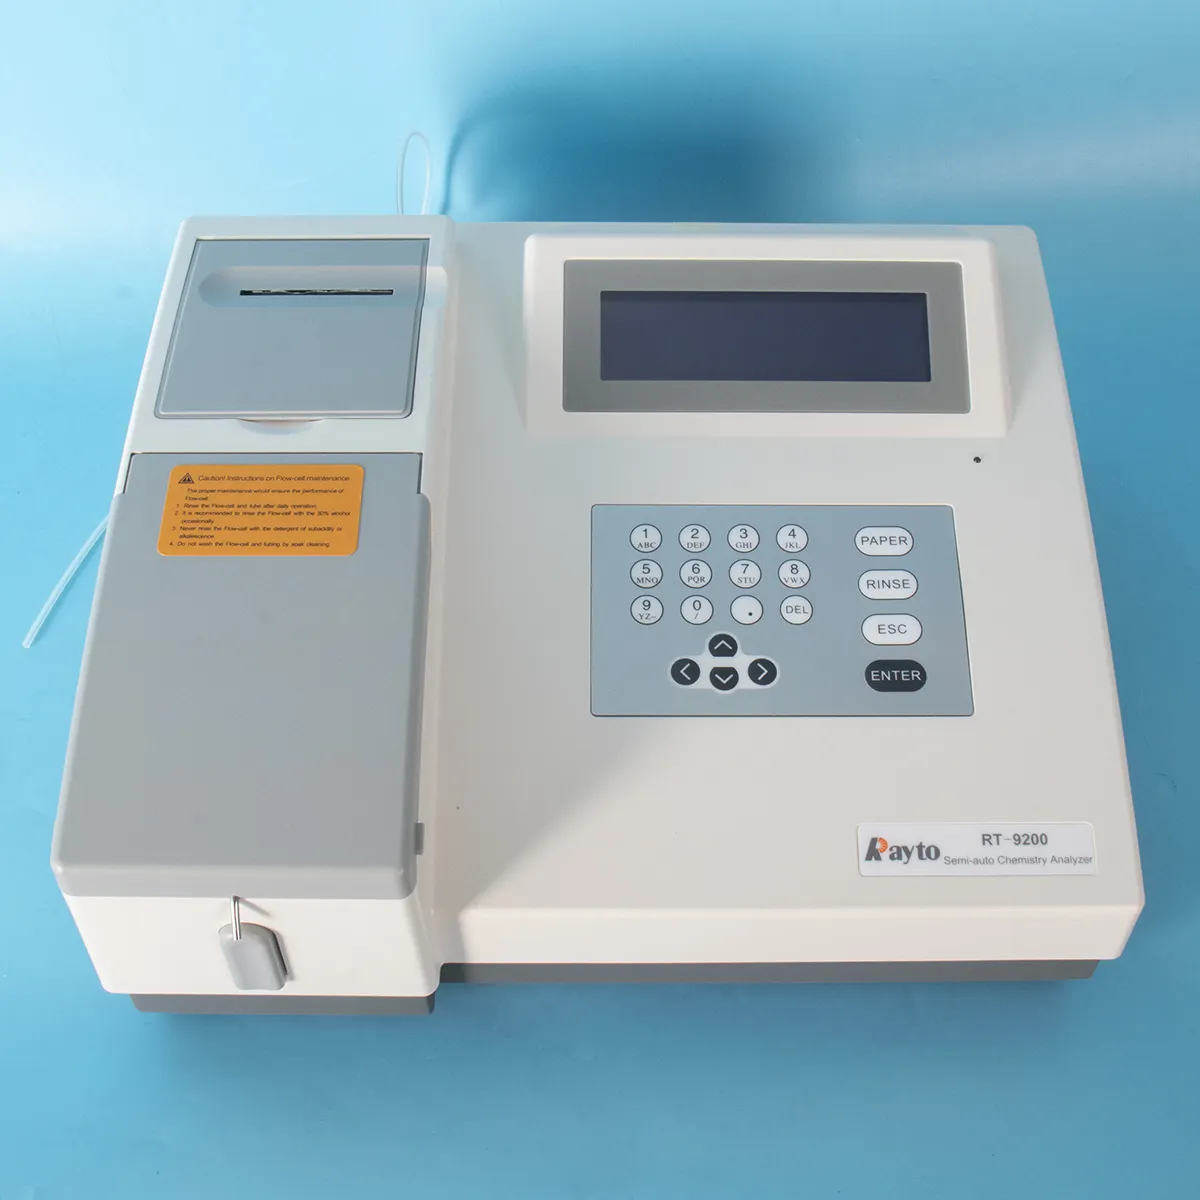 Rayto RT-9200 analisador semi-automático de laboratório de química química